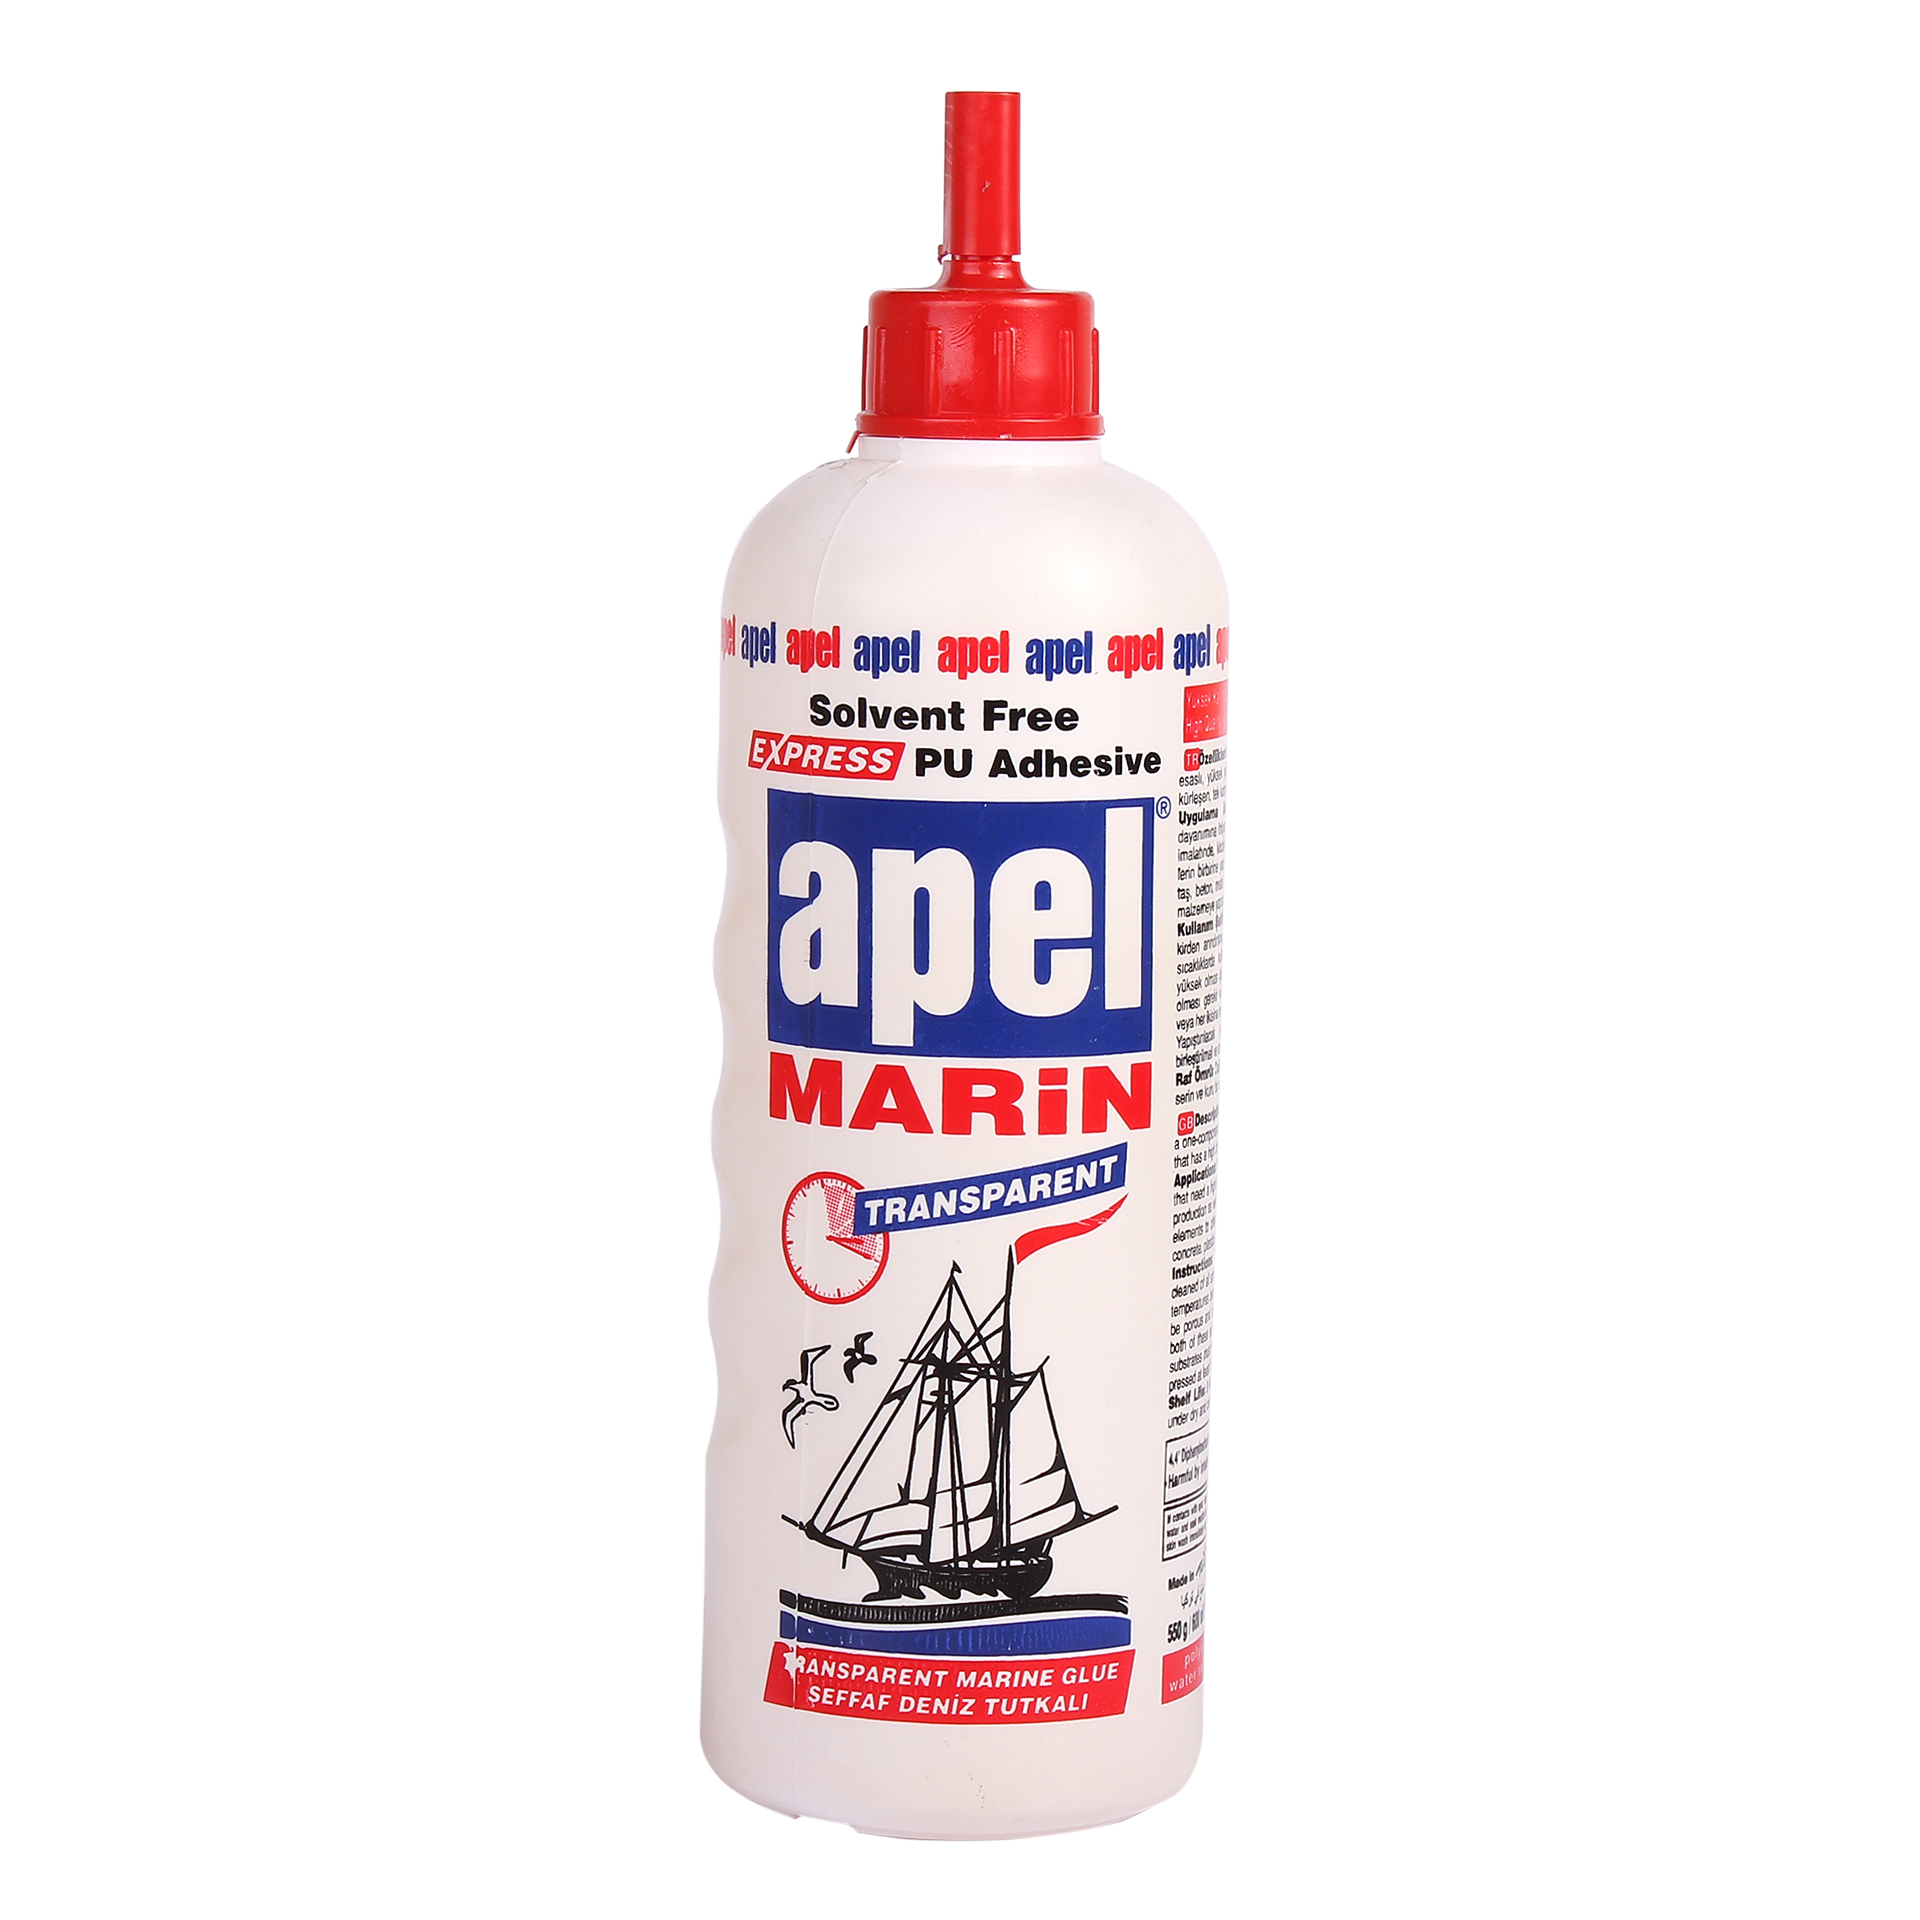 Apel express pu marine glue